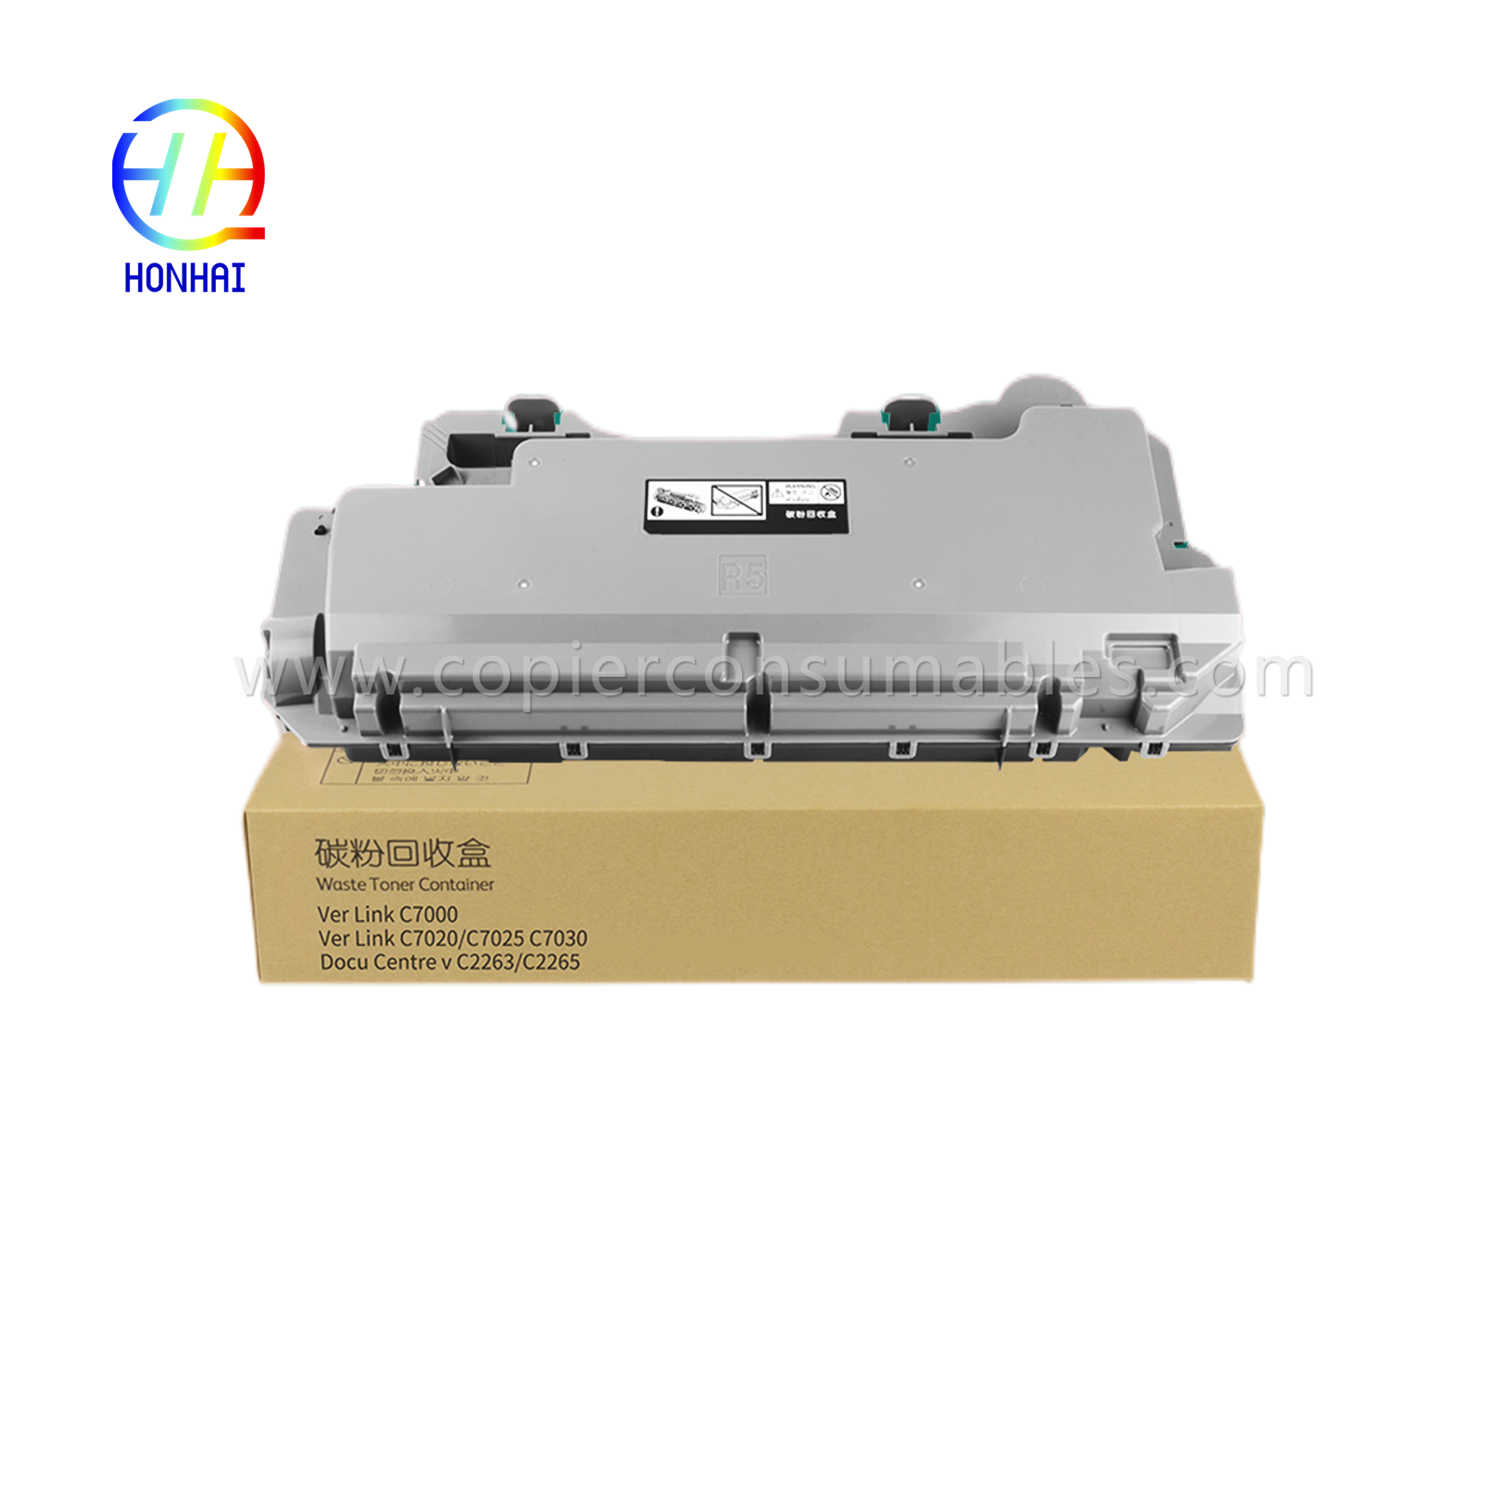 Wadah Toner Limbah untuk Xerox C7020 7025 7030 7120 7125 7130 115R00128 (1)